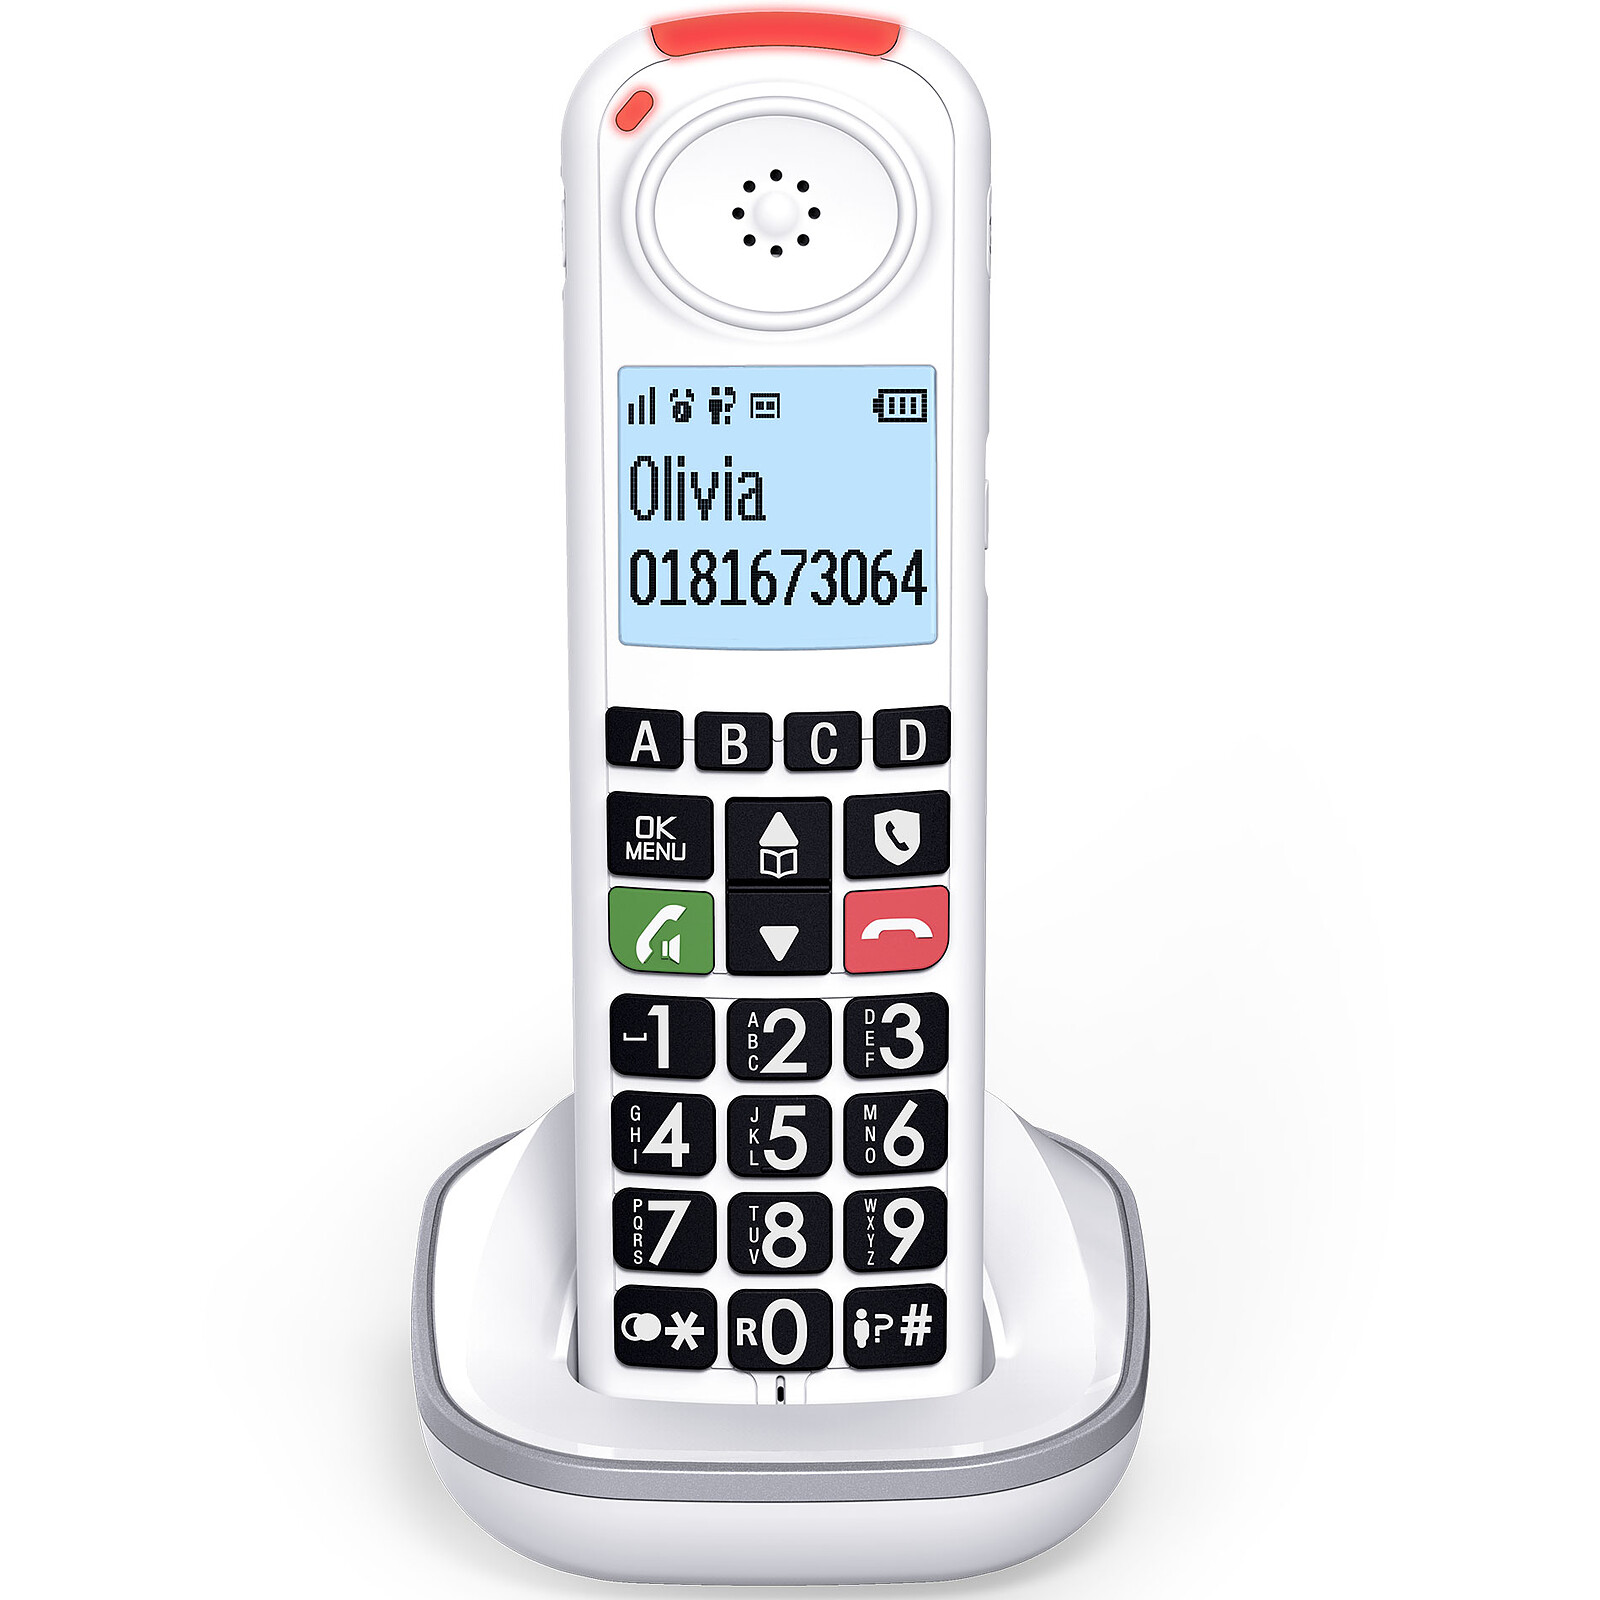 Logicom Confort 250 Duo Téléphone Sans Fil Sans Répondeur Blanc